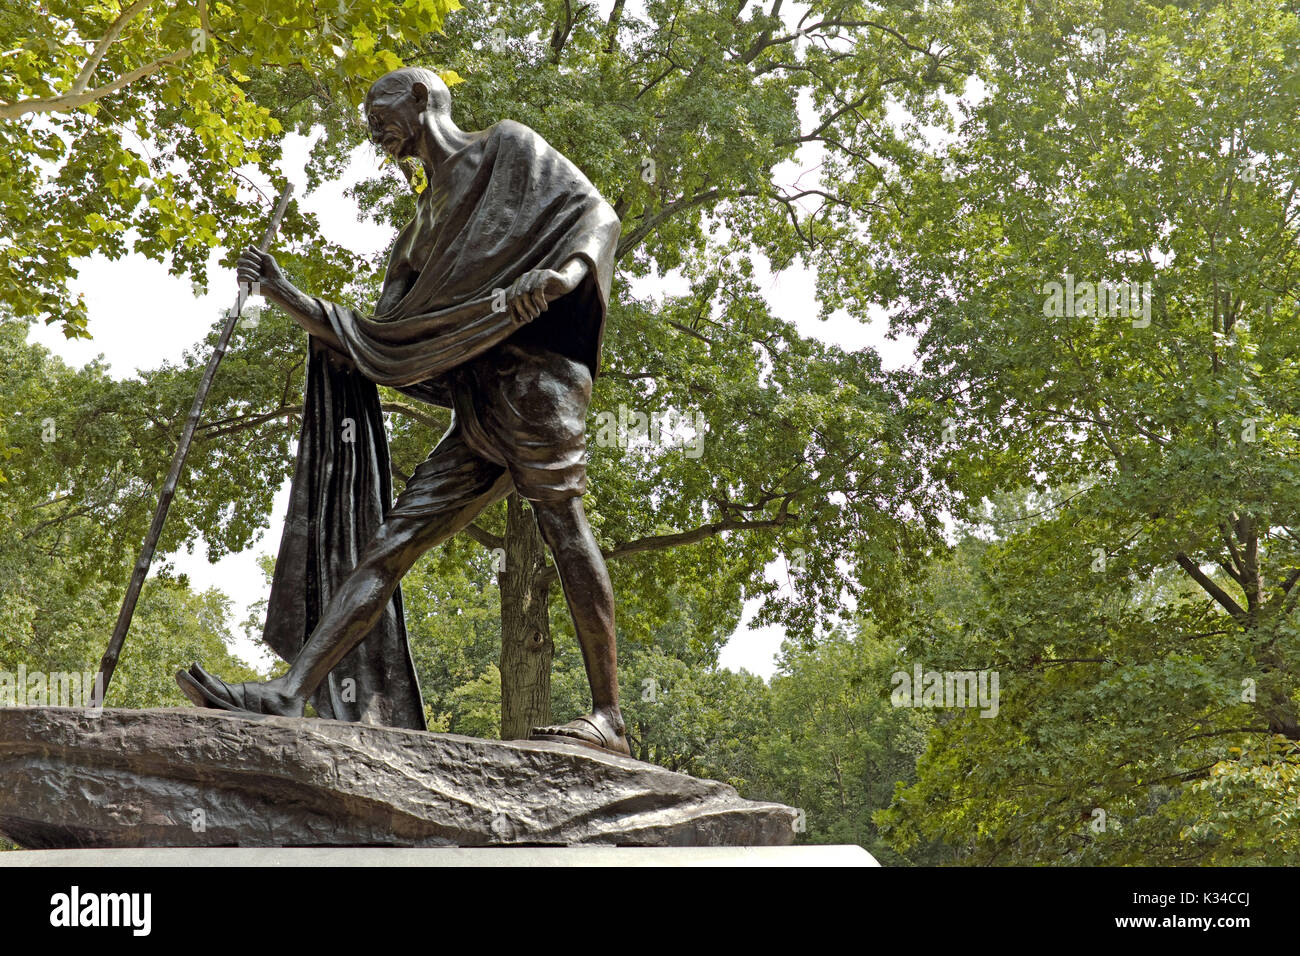 Statua del Mahatma Gandhi in india culturale sezione giardini di Cleveland, Ohio, Stati Uniti d'America rockefeller park giardini culturali Foto Stock